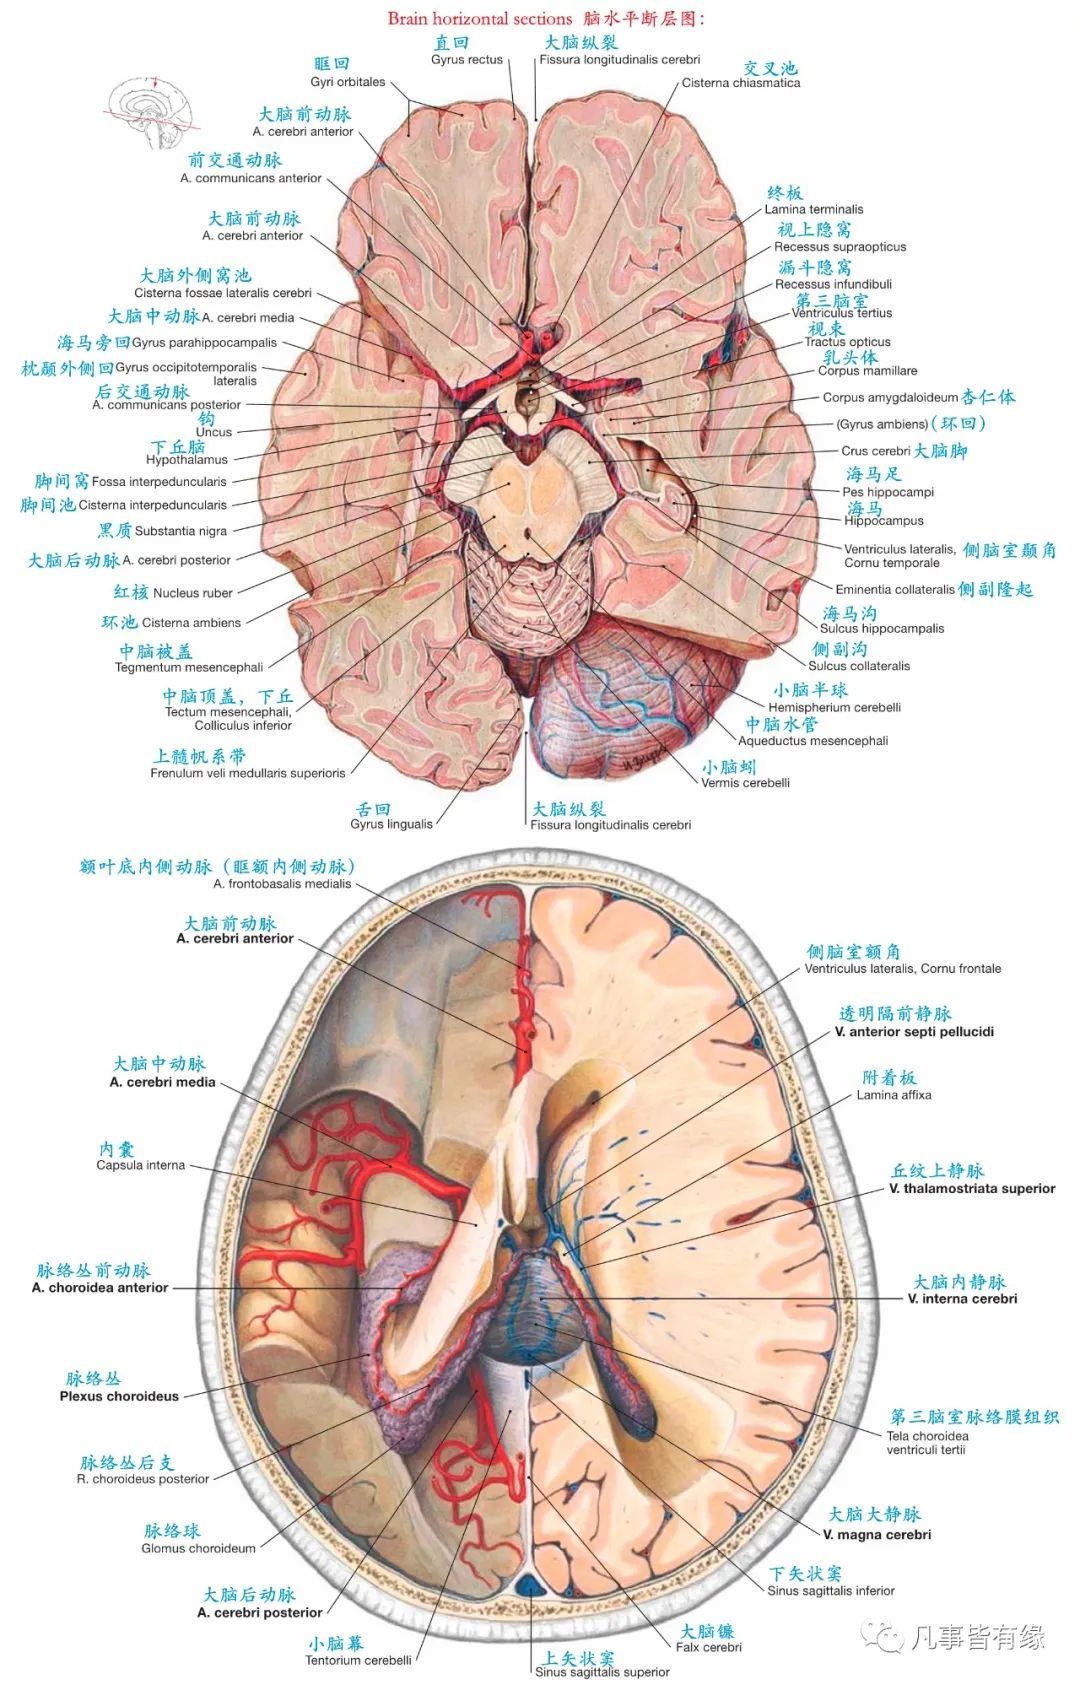 颅脑mri断层解剖结构标注section anatomy五,脑干轴位断层解剖示意图